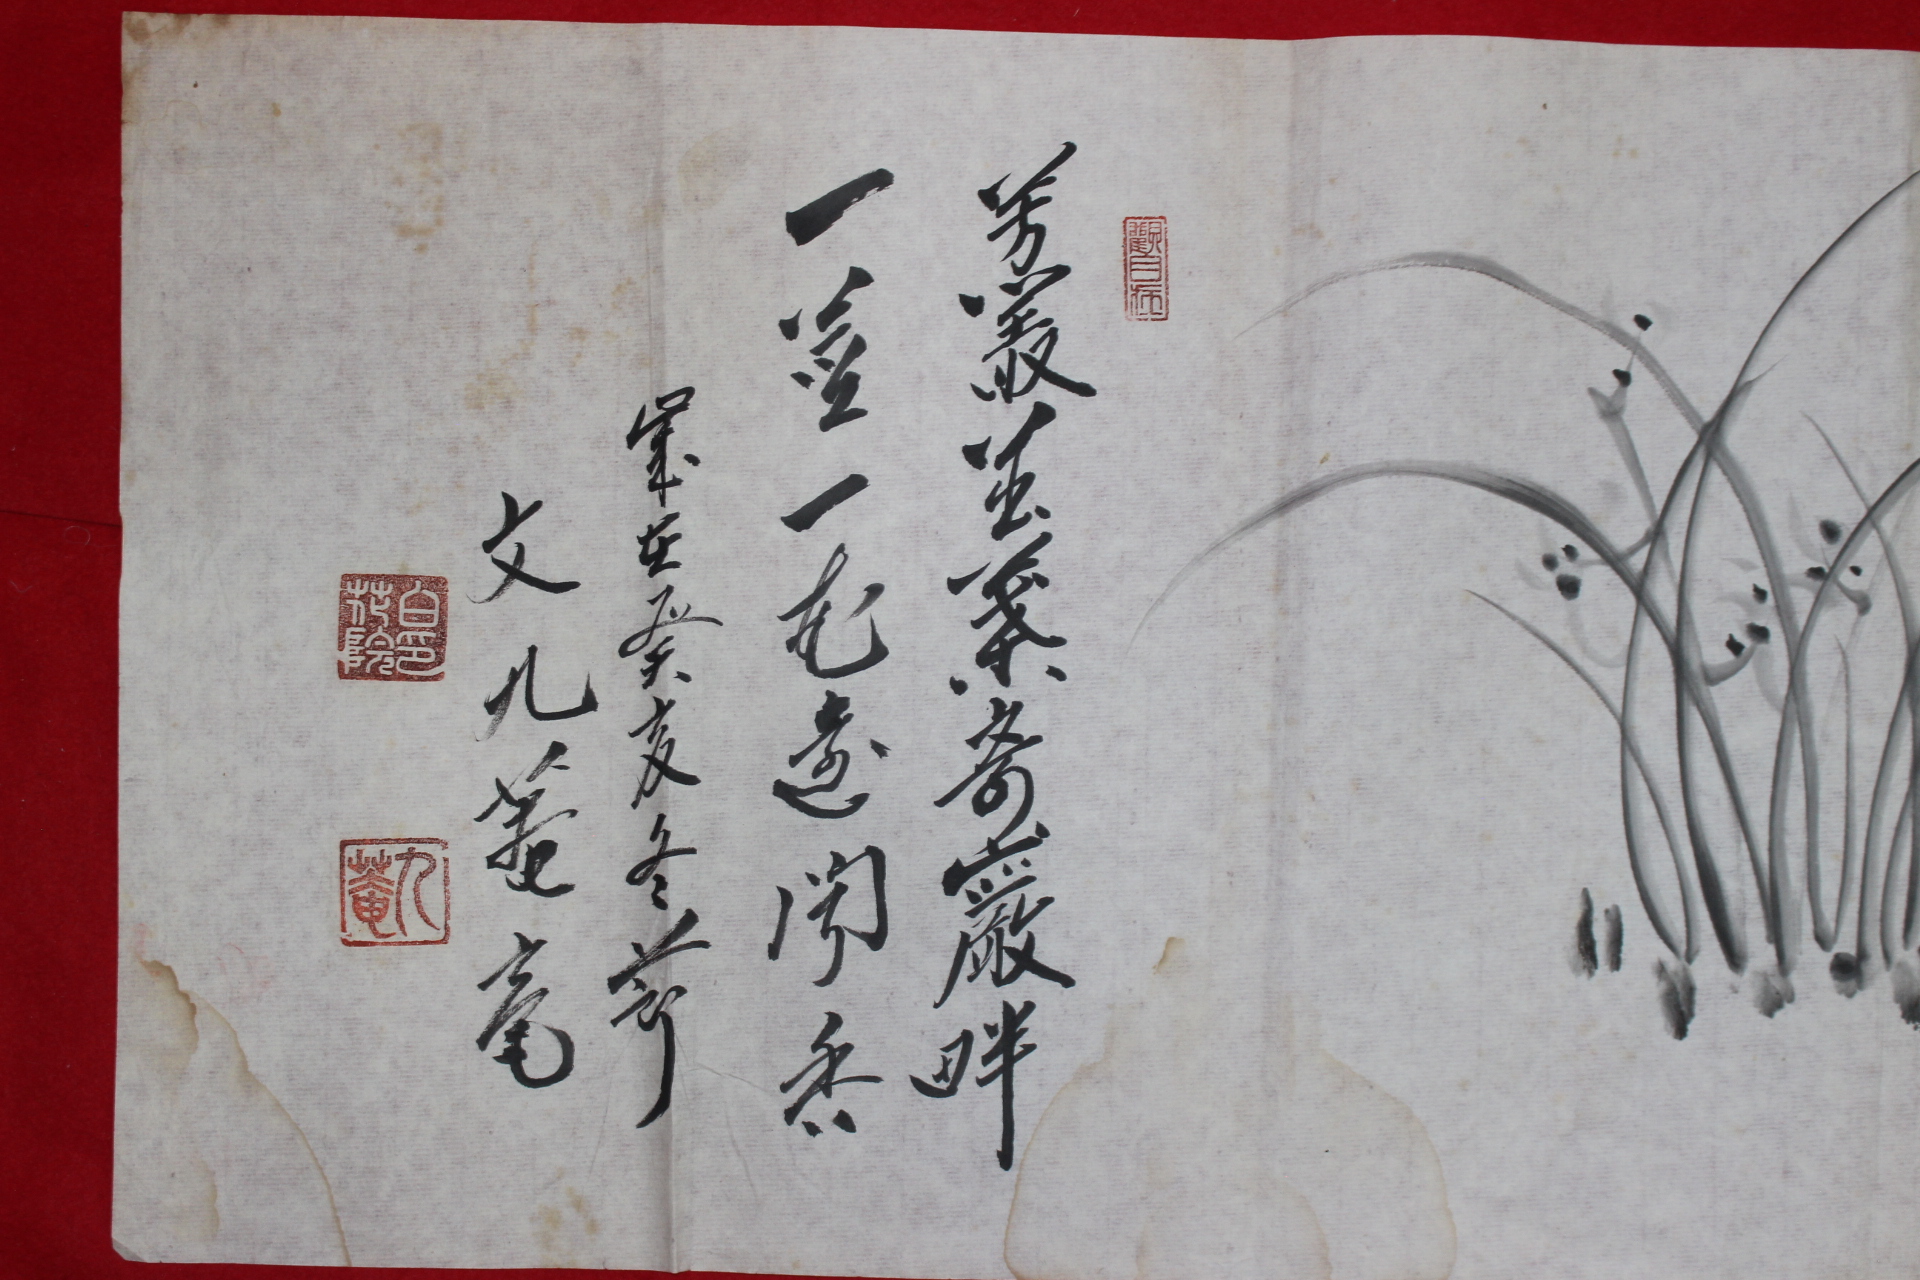 640-대한불교법화종 종정 문구암(文九菴)스님 난초 그림